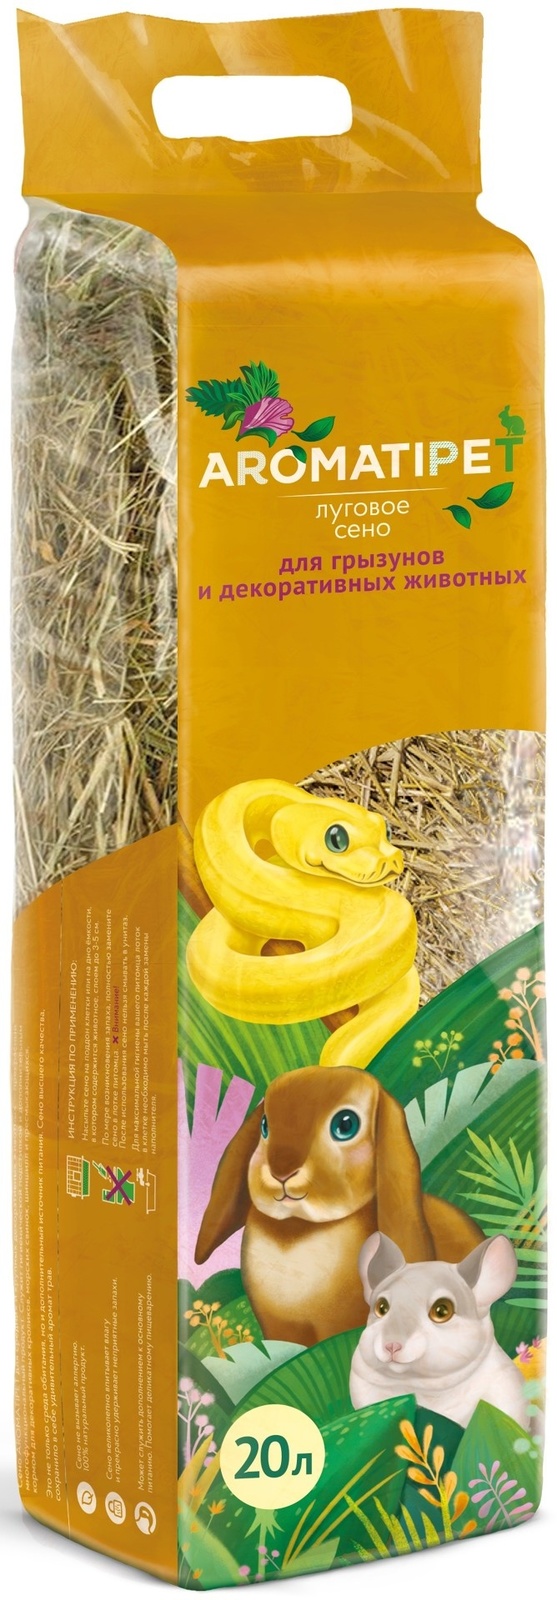 AromatiPet сено луговое для грызунов и декоративных животных, 20л (600 г)